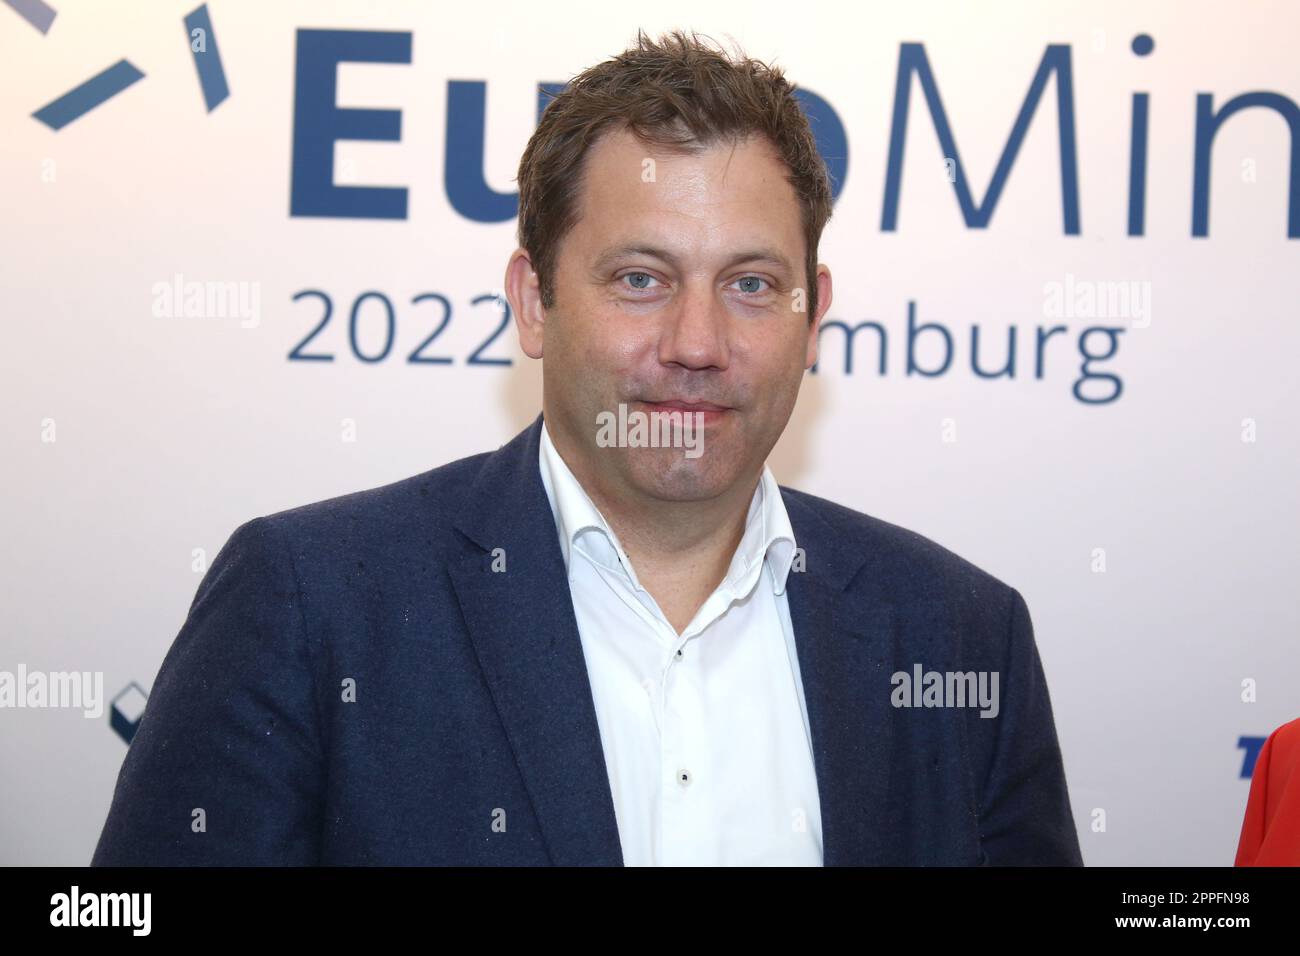 Lars Klingbeil, Eurominds Economic Summit, Bucerius Law School Hamburg, 01.07.2022 Banque D'Images